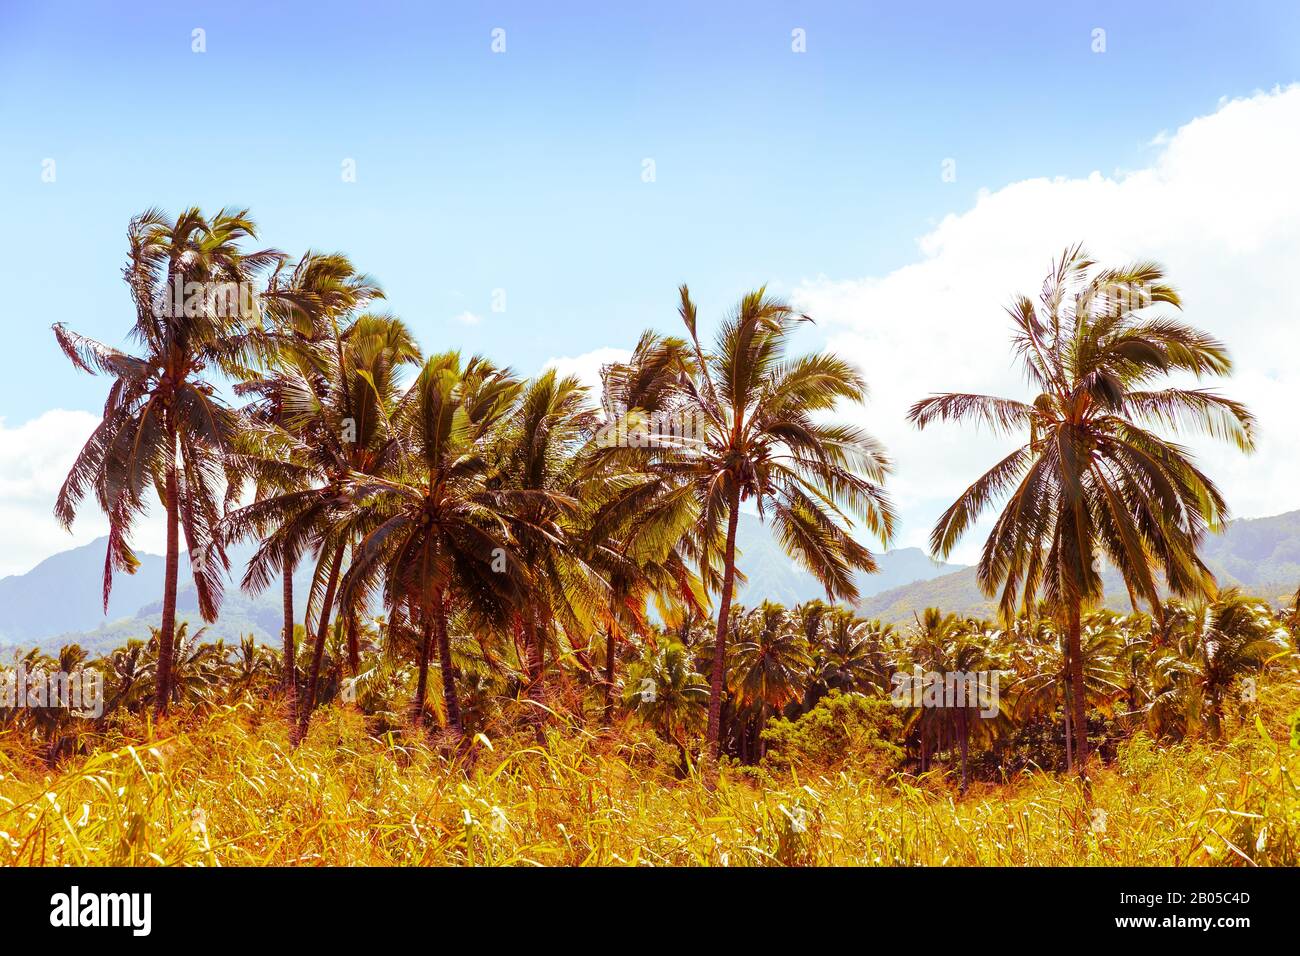 Palmeras de coco de estilo vintage en los trópicos Foto de stock